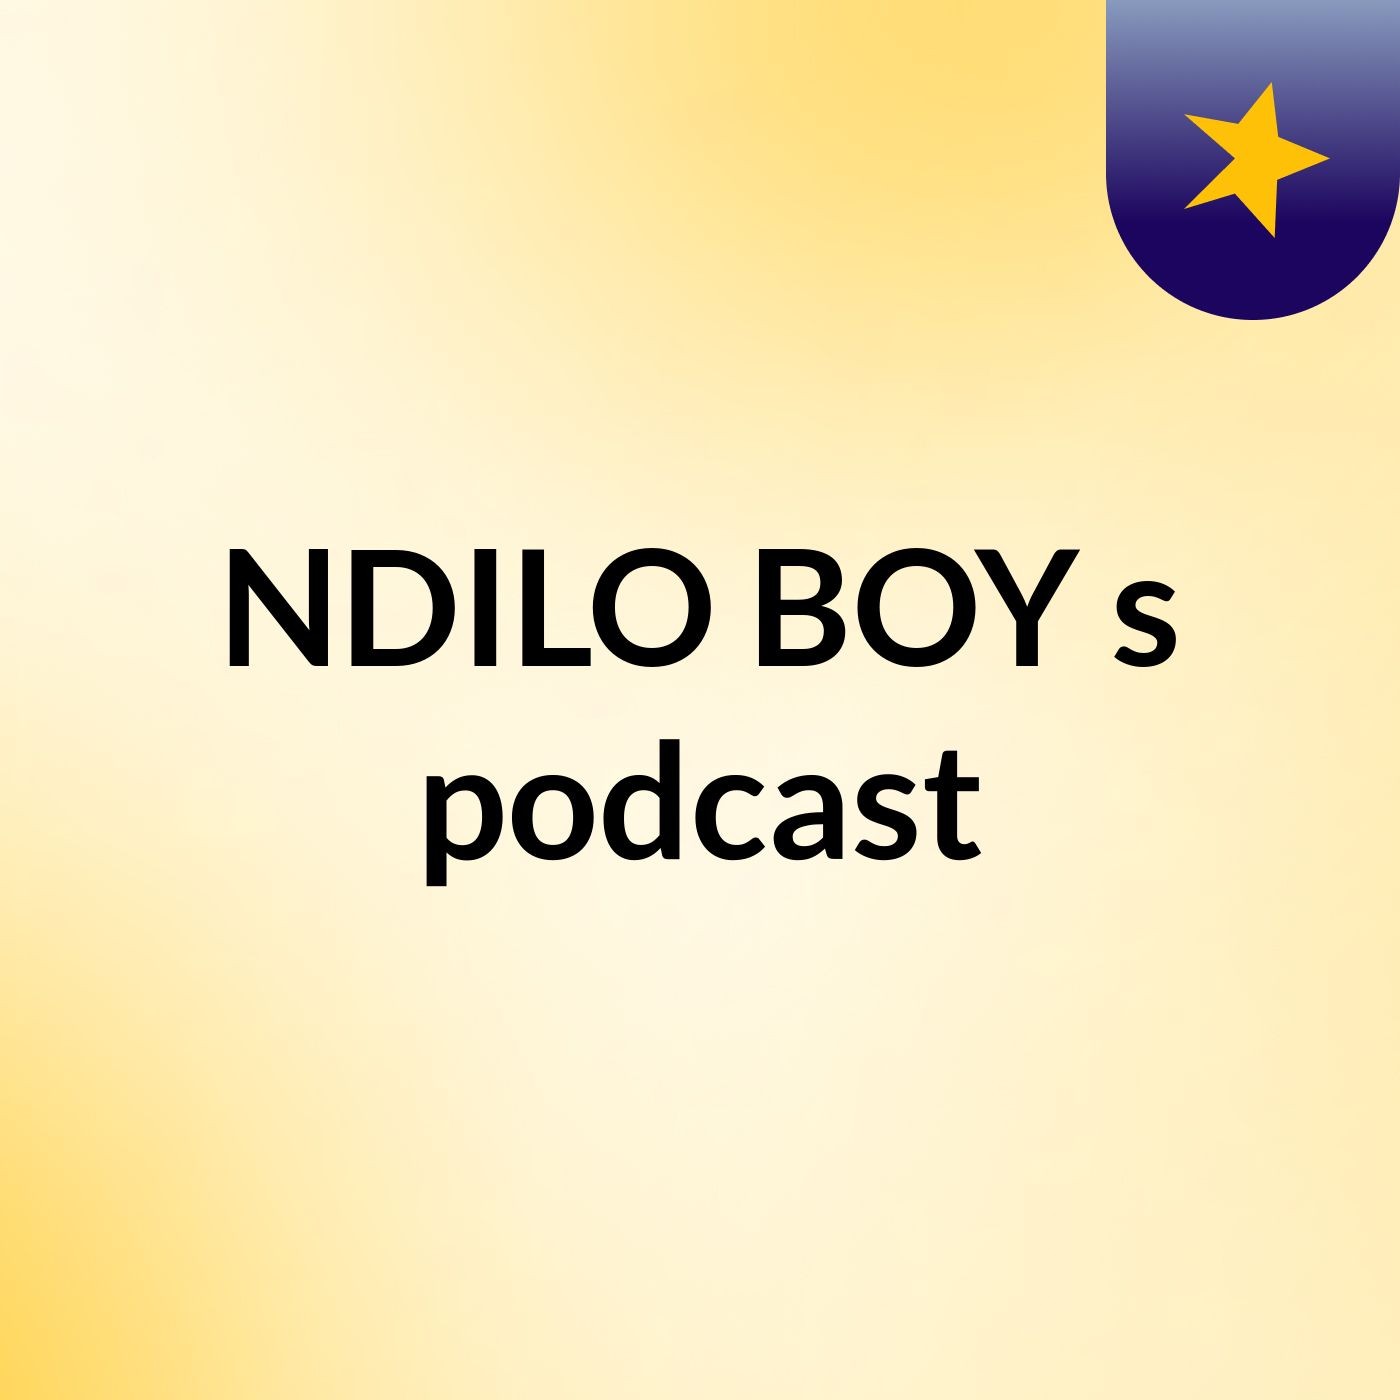 Episode 2 - NDILO BOY's podcast